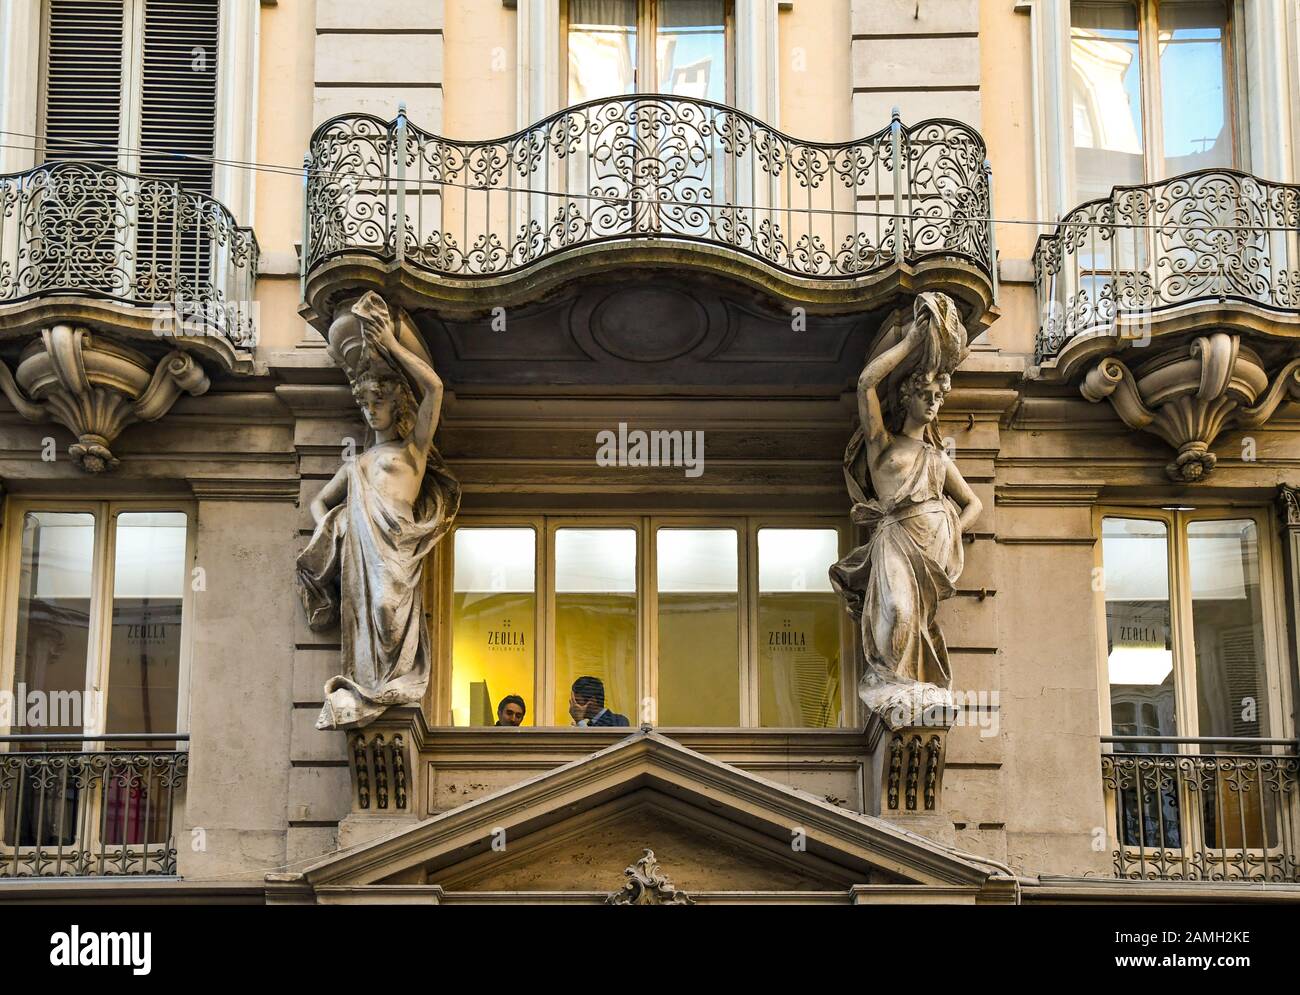 Stile barocco façade di un palazzo decorato con un paio di cariatidi che sostengono un balcone in Via Garibaldi nel centro di Torino, Piemonte, Italia Foto Stock